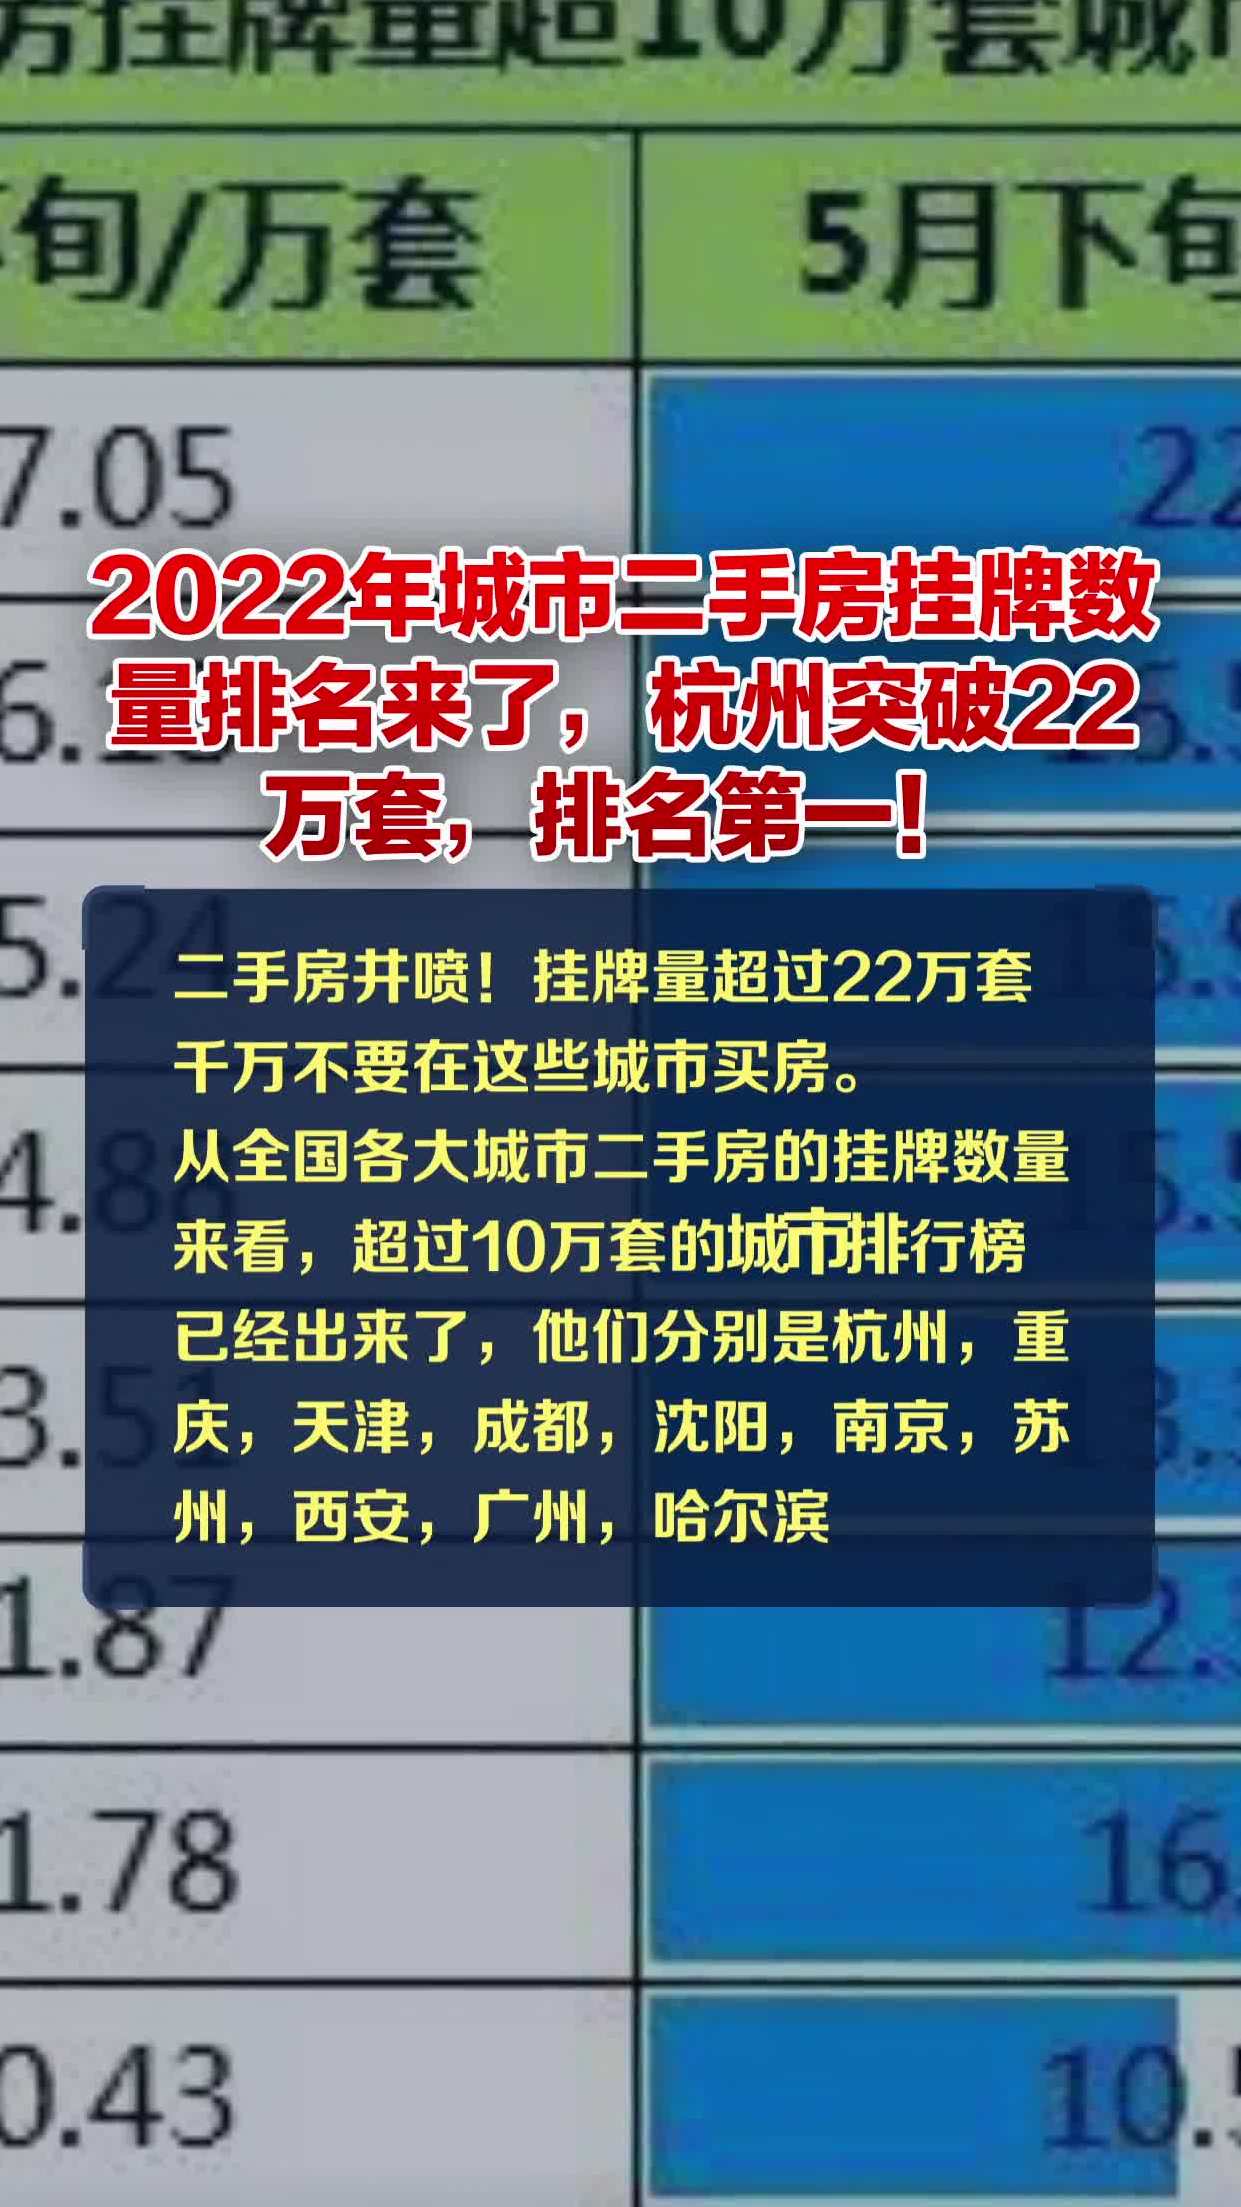 2022年城市二手房挂牌数量排名来了,杭州突破22万套,排名第一!